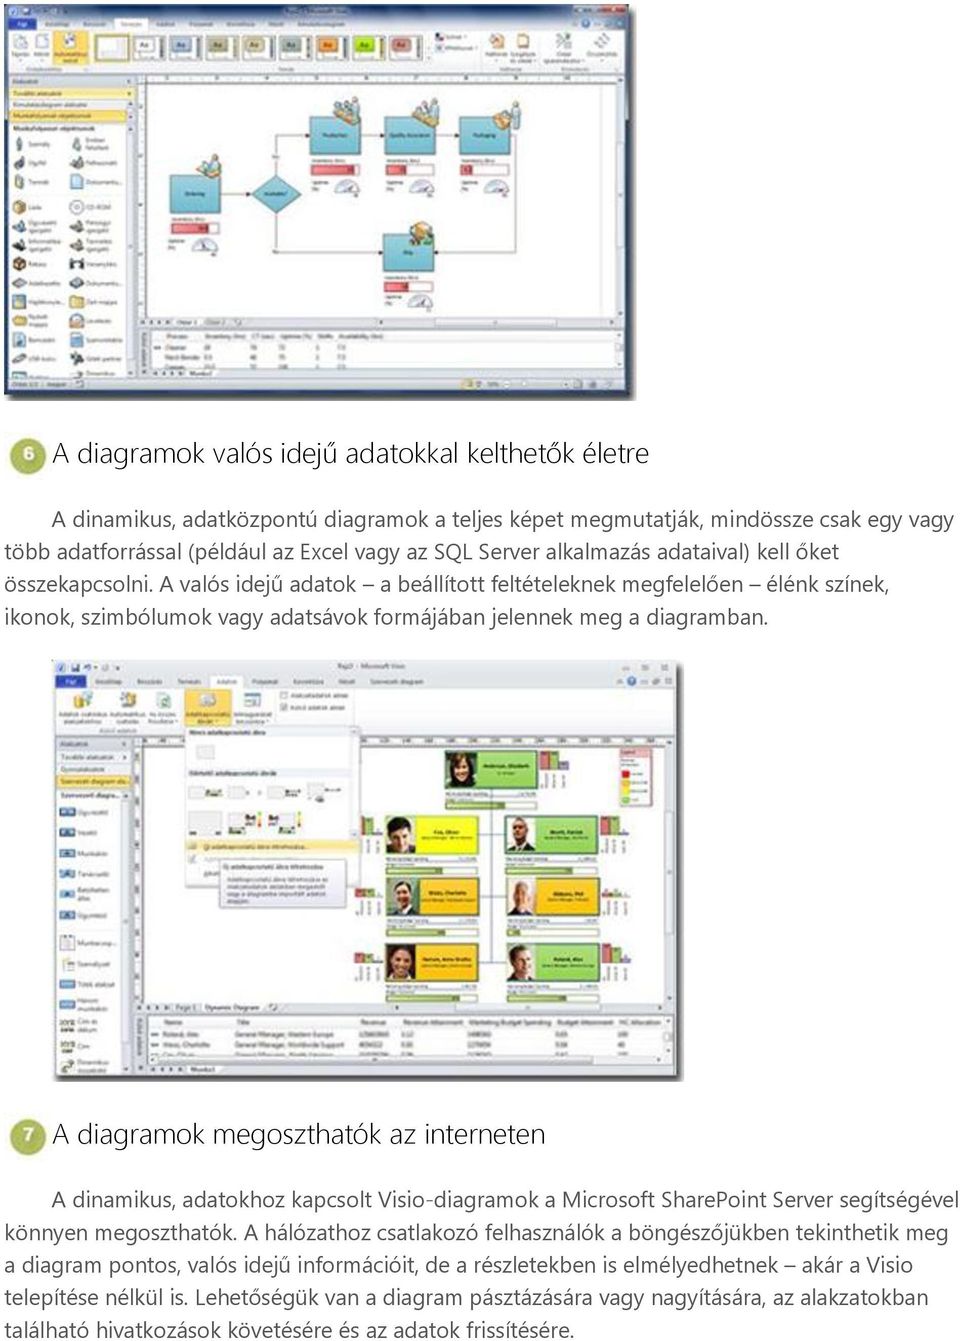 A diagramok megoszthatók az interneten A dinamikus, adatokhoz kapcsolt Visio-diagramok a Microsoft SharePoint Server segítségével könnyen megoszthatók.